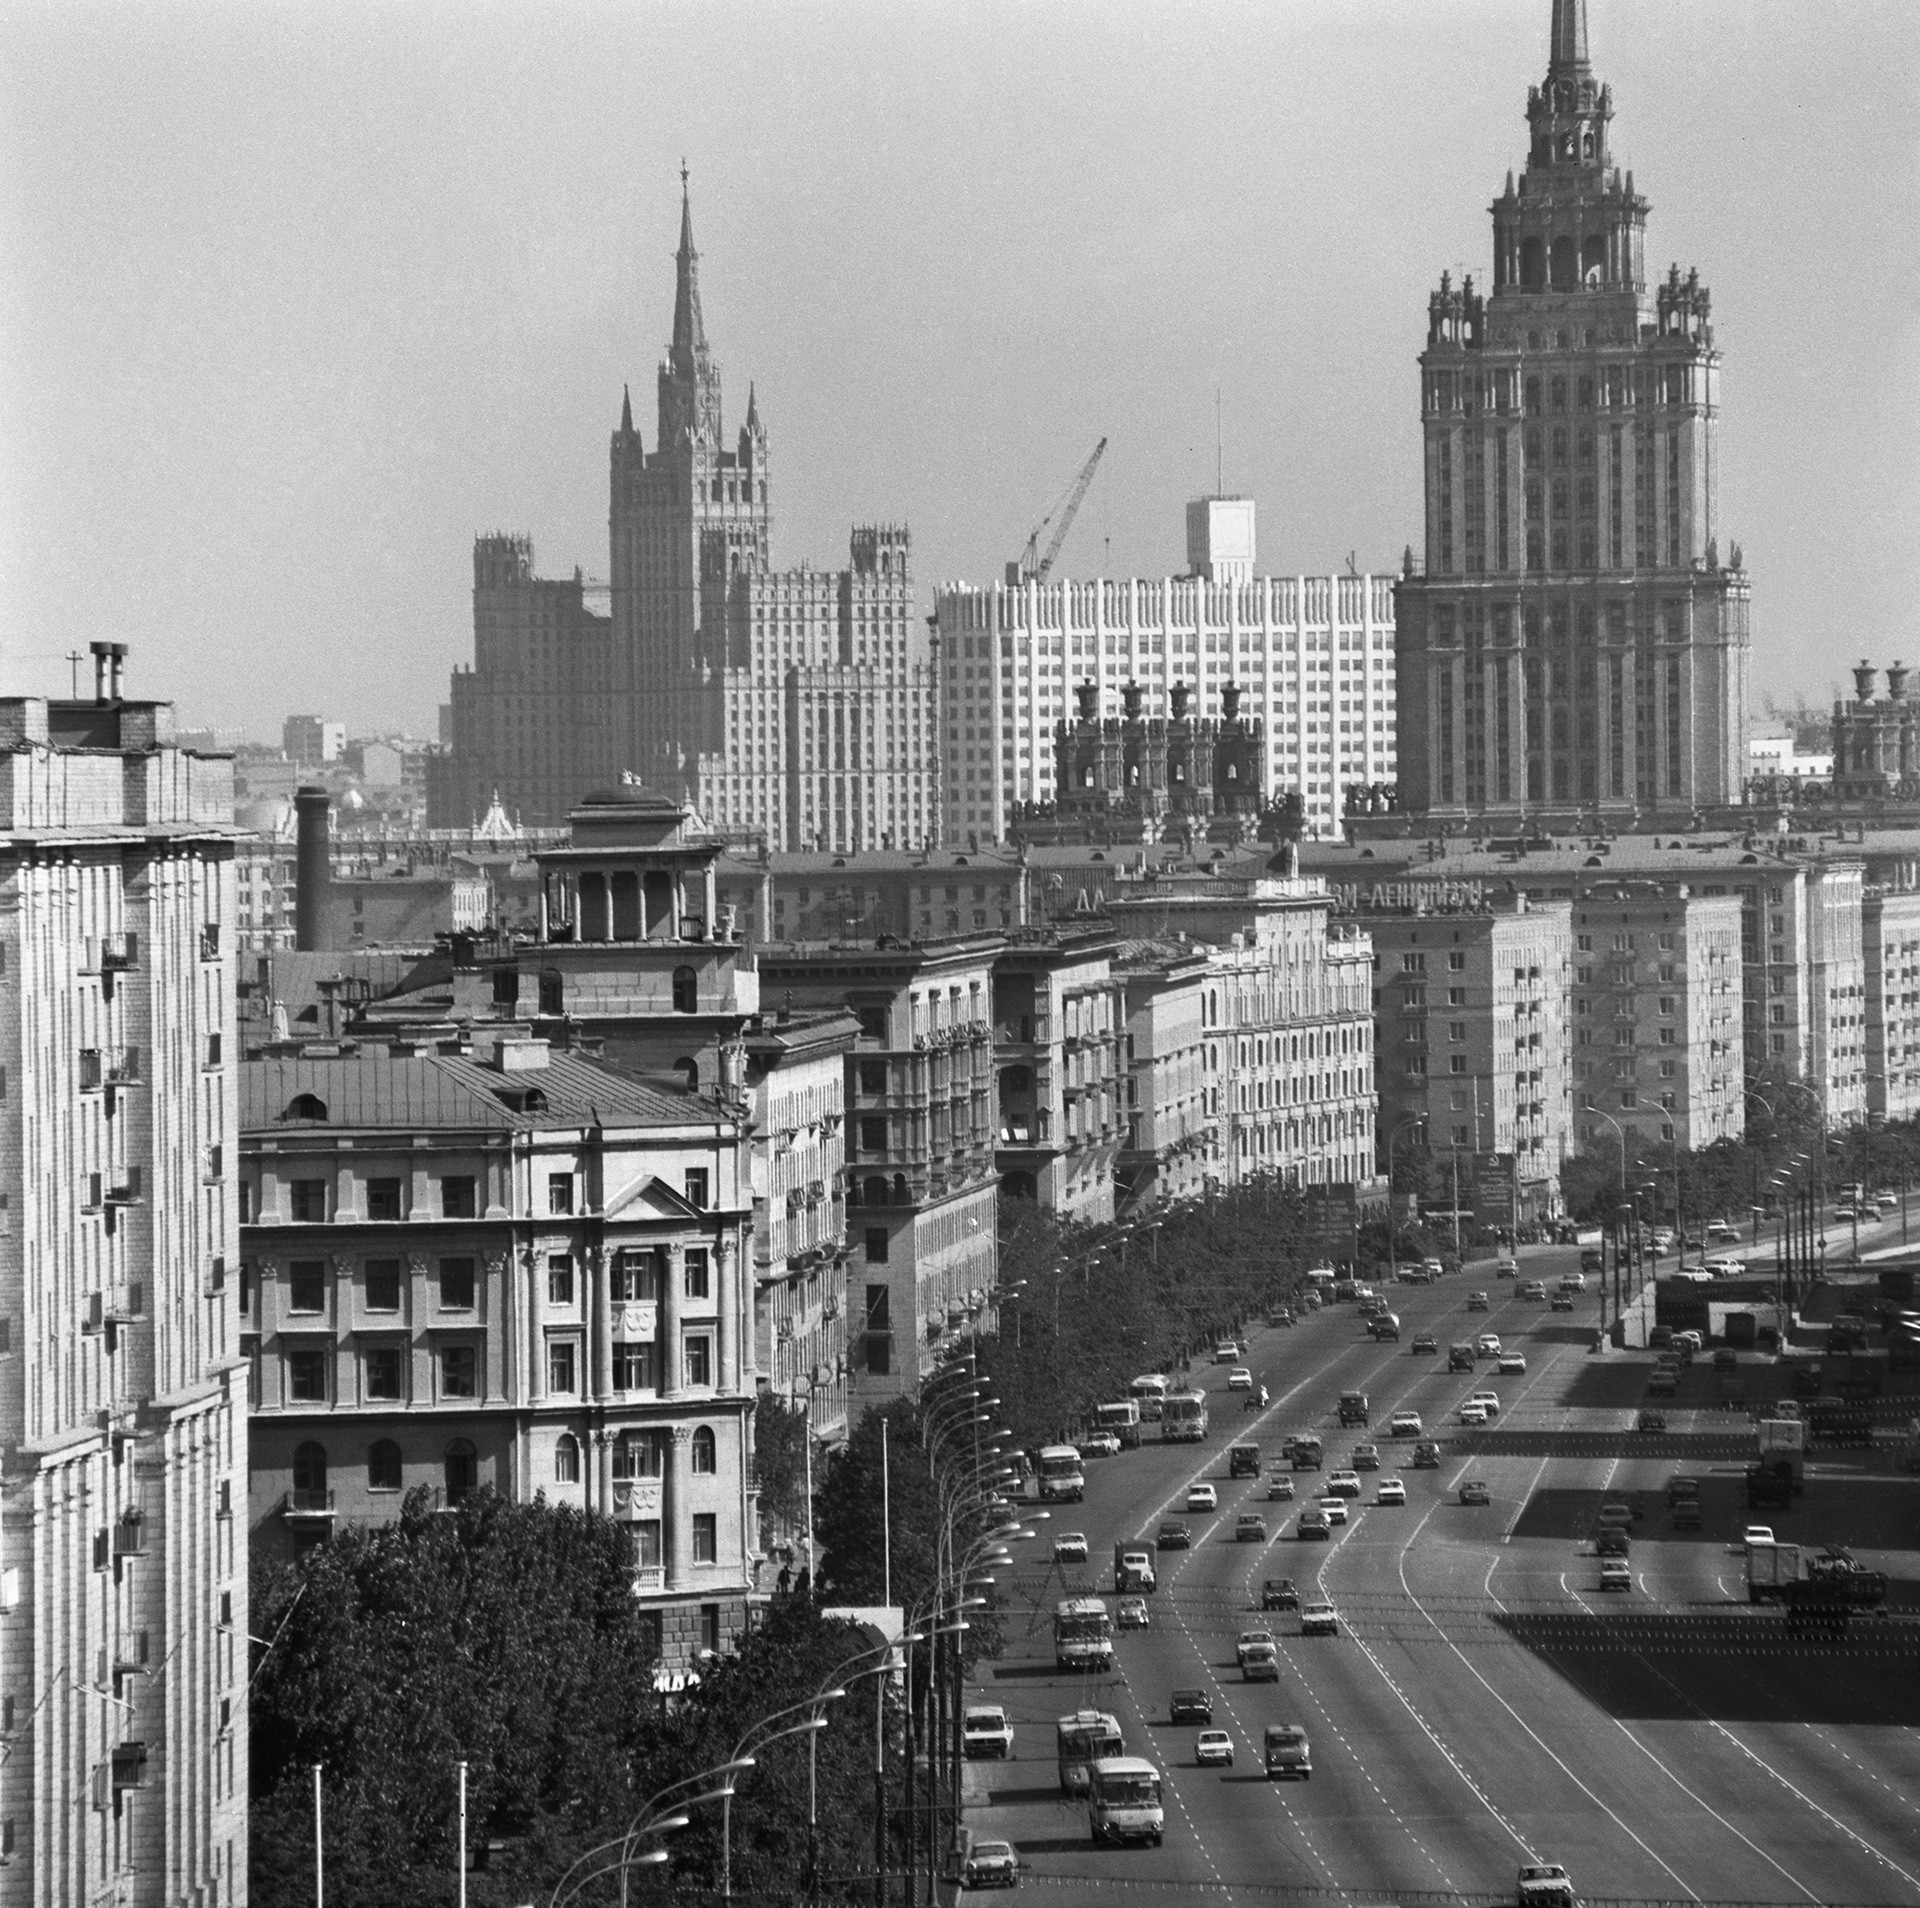 A avenida Kutuzovski Prospekt, em Moscou, onde vivia a elite dos funcionários soviéticos, como Leonid Brejnev e Iúri Andropov.